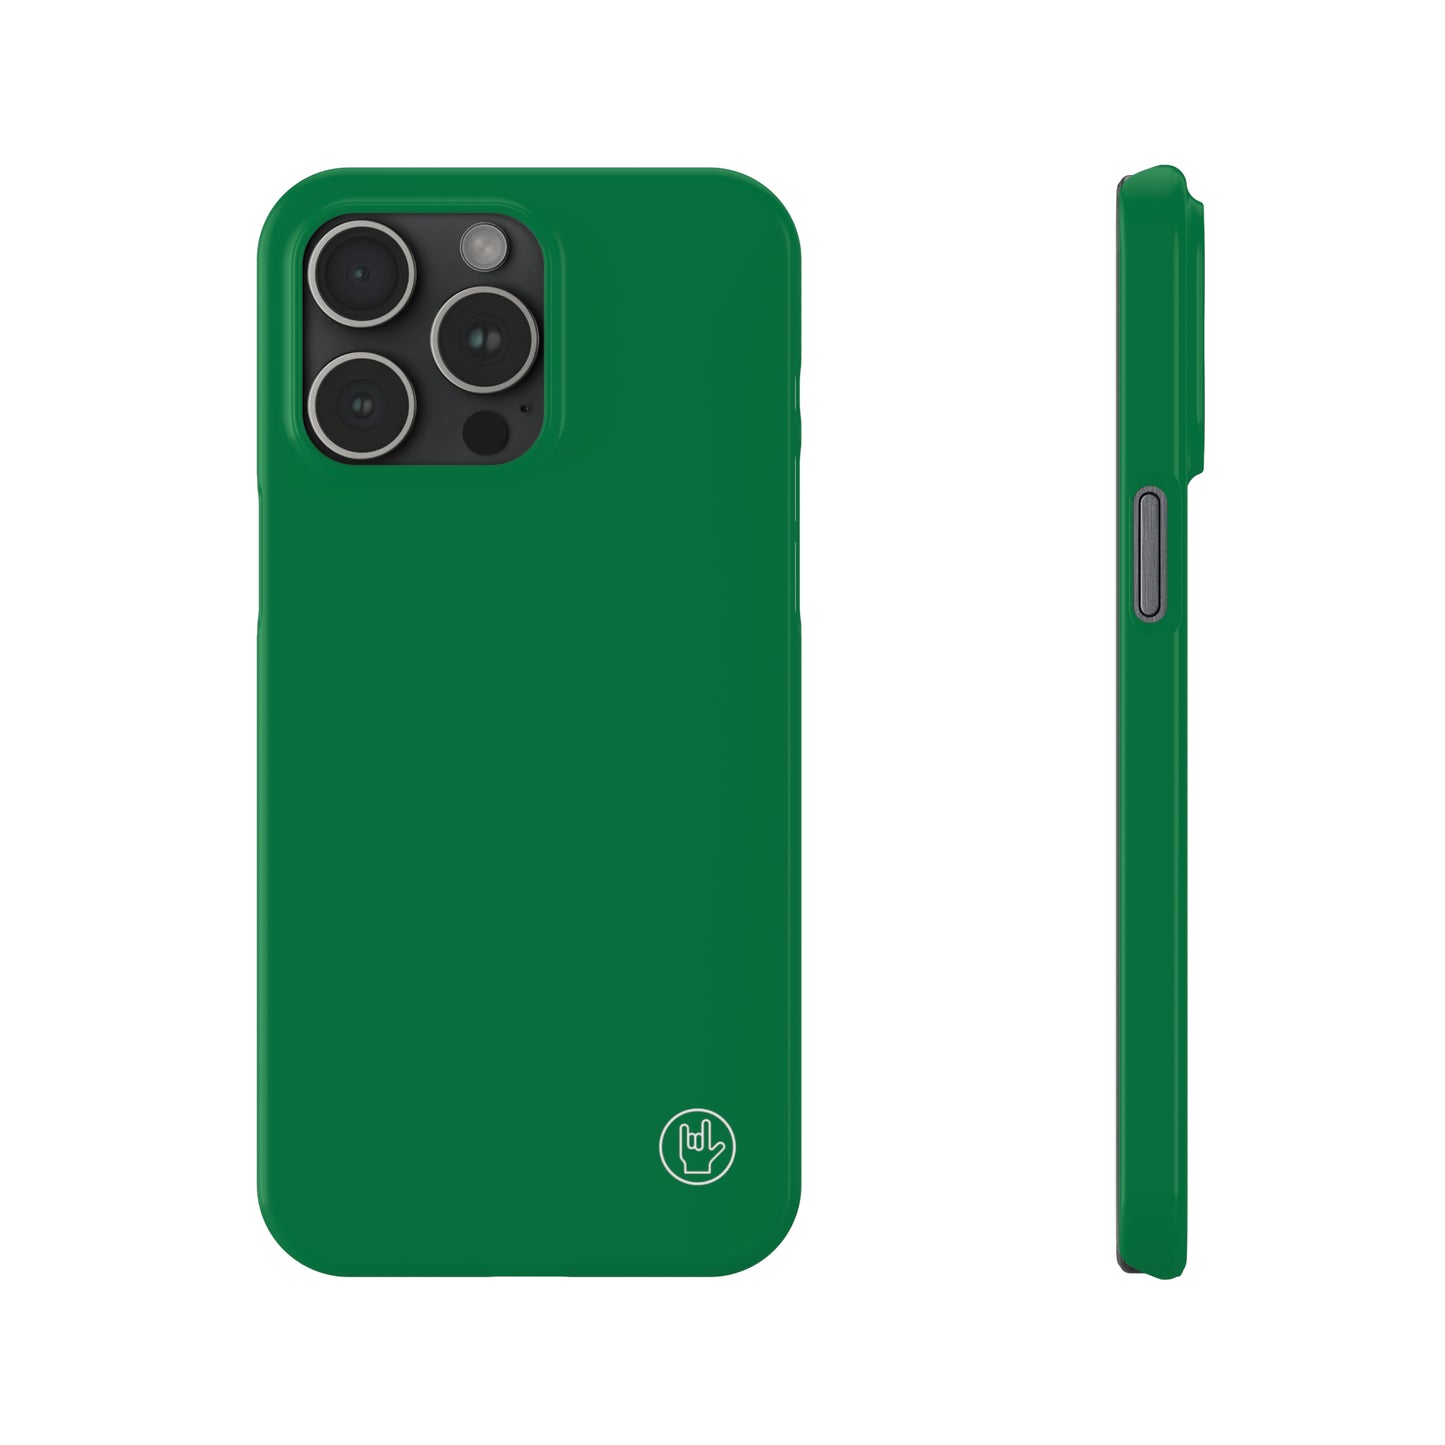 Green Phone Case - Solid Color Phone Case - Premium Slim Phone Case